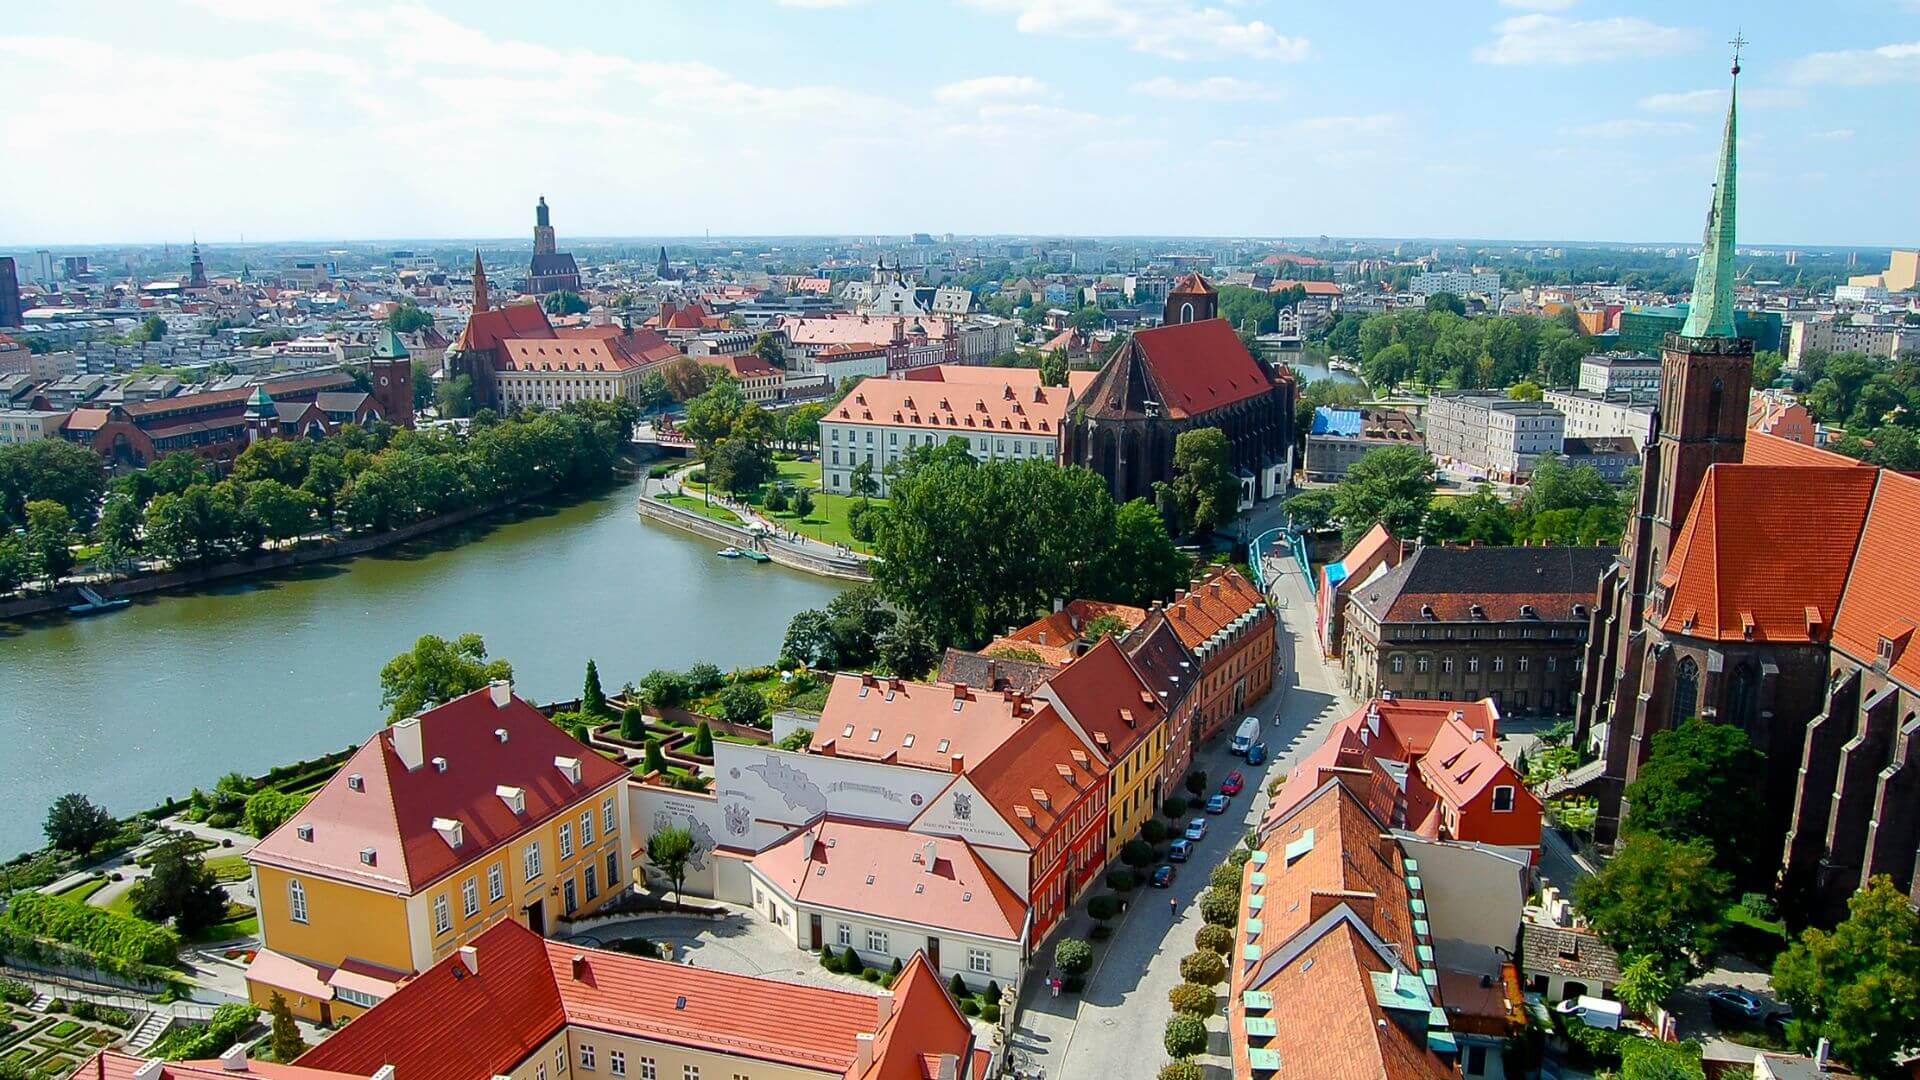 Destination: Wroclaw, Poland